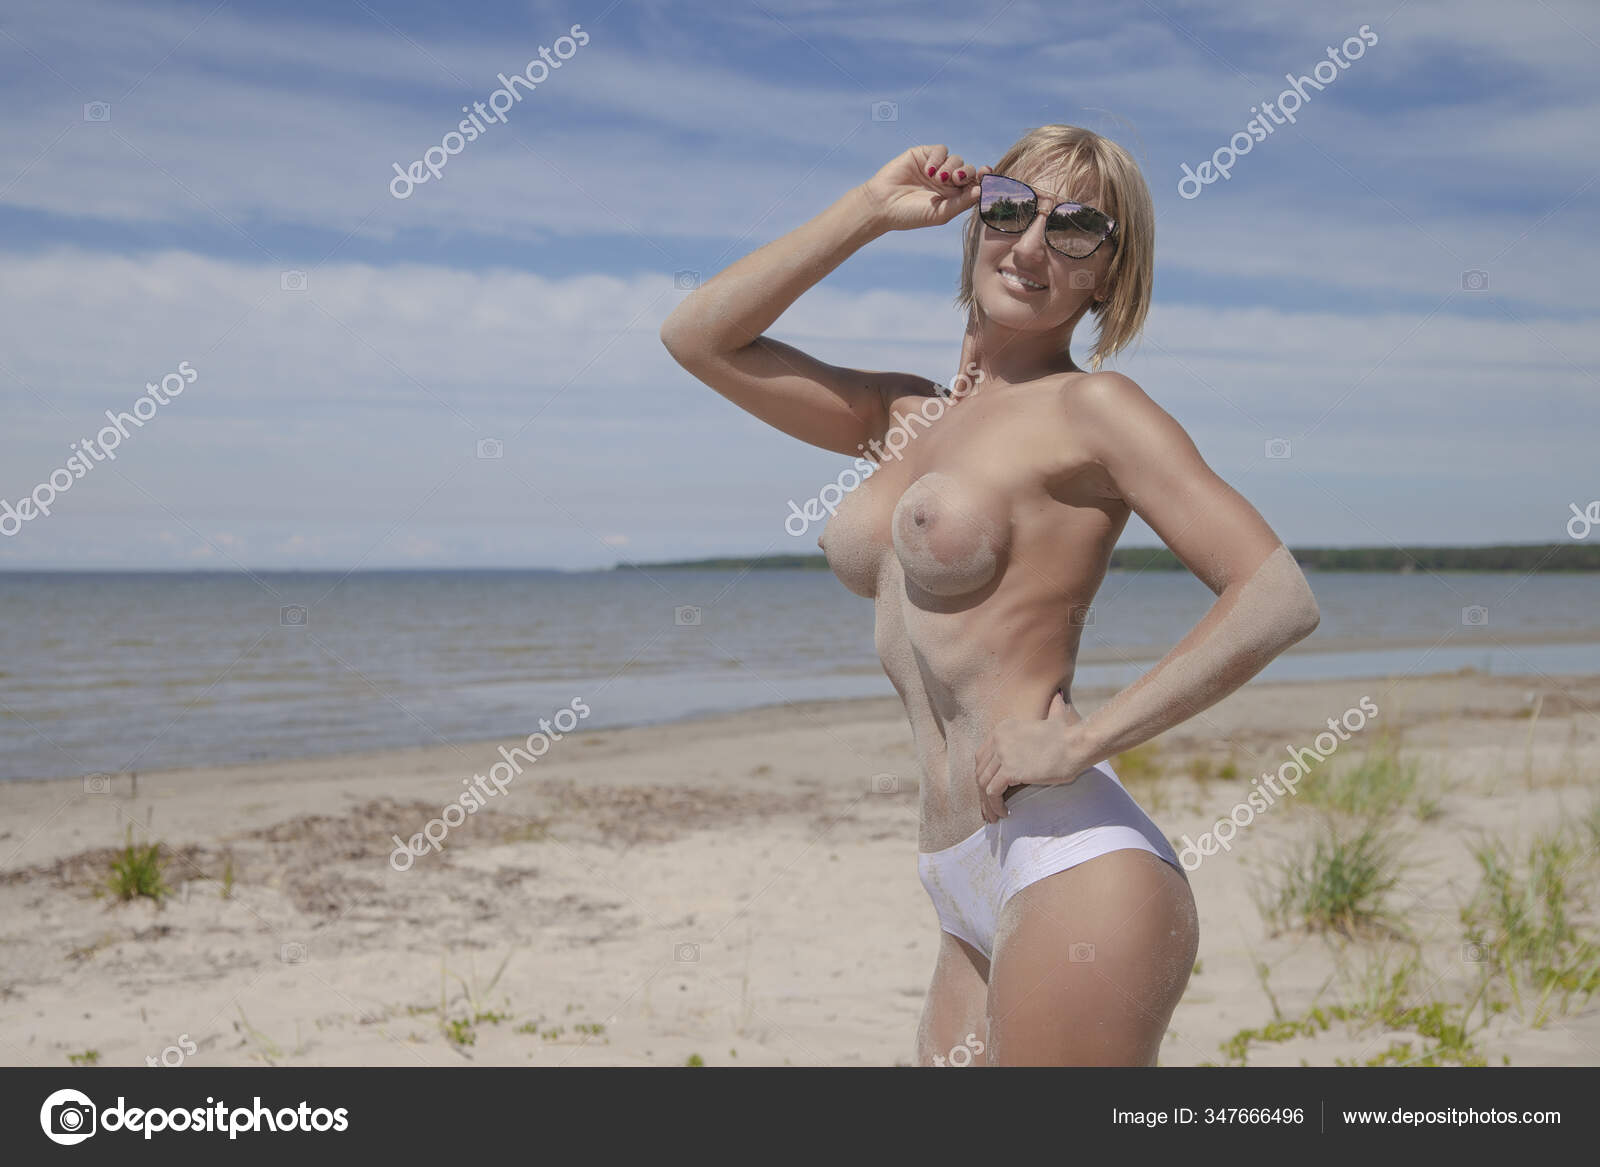 https://st3n.depositphotos.com/2970081/34766/i/1600/depositphotos_347666496-stock-photo-young-sexy-girl-nude-beautiful.jpg